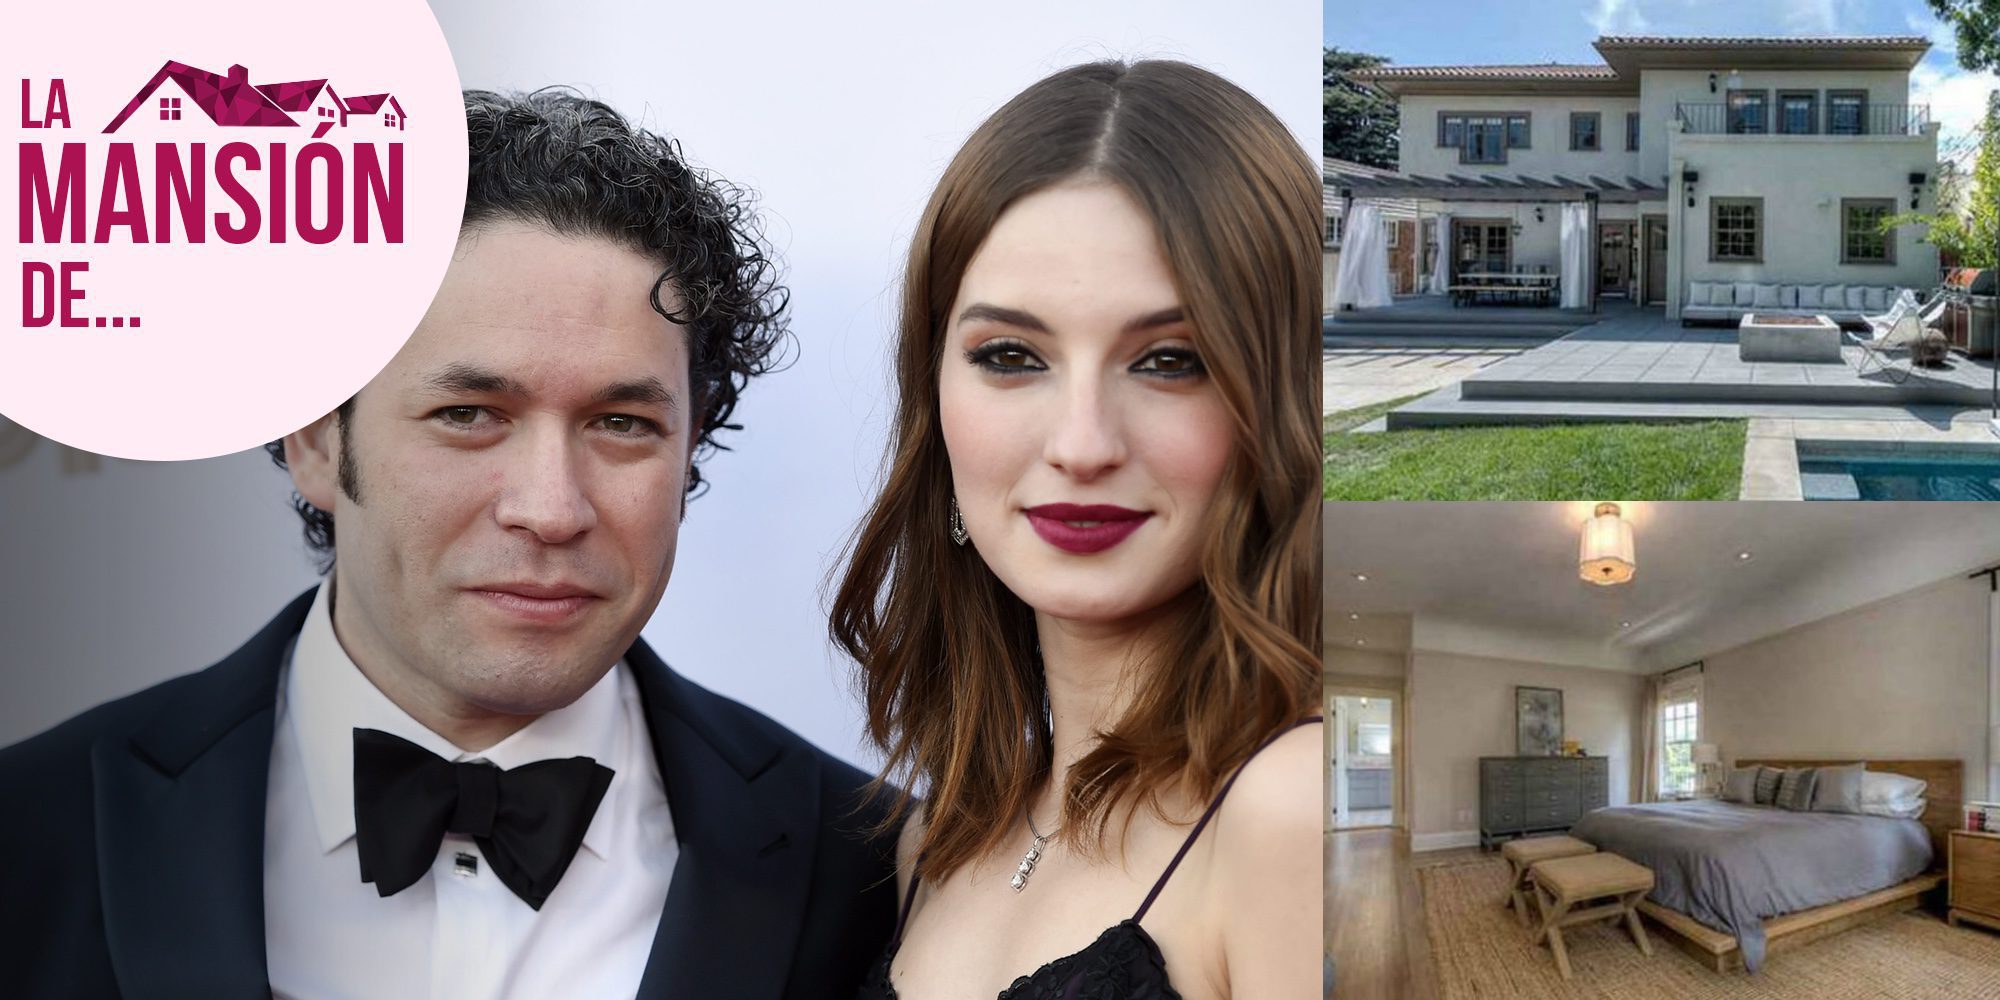 La espectacular mansión de Los Ángeles de Gustavo Dudamel, pareja de María Valverde